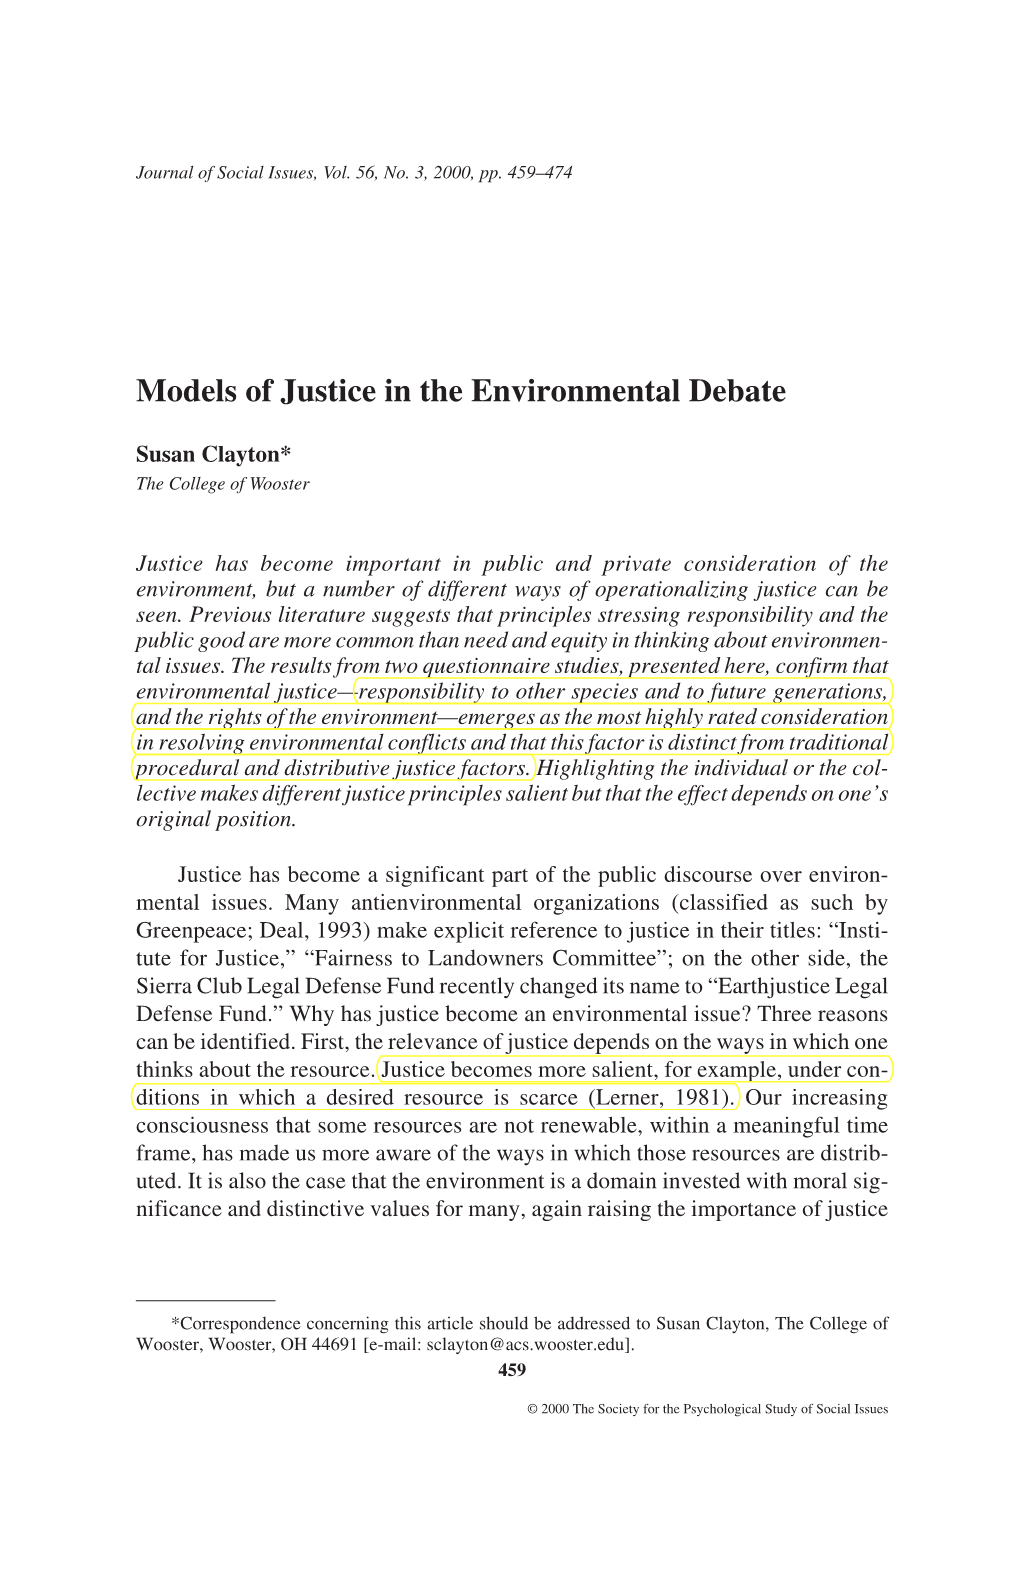 Models of Justice in the Environmental Debate